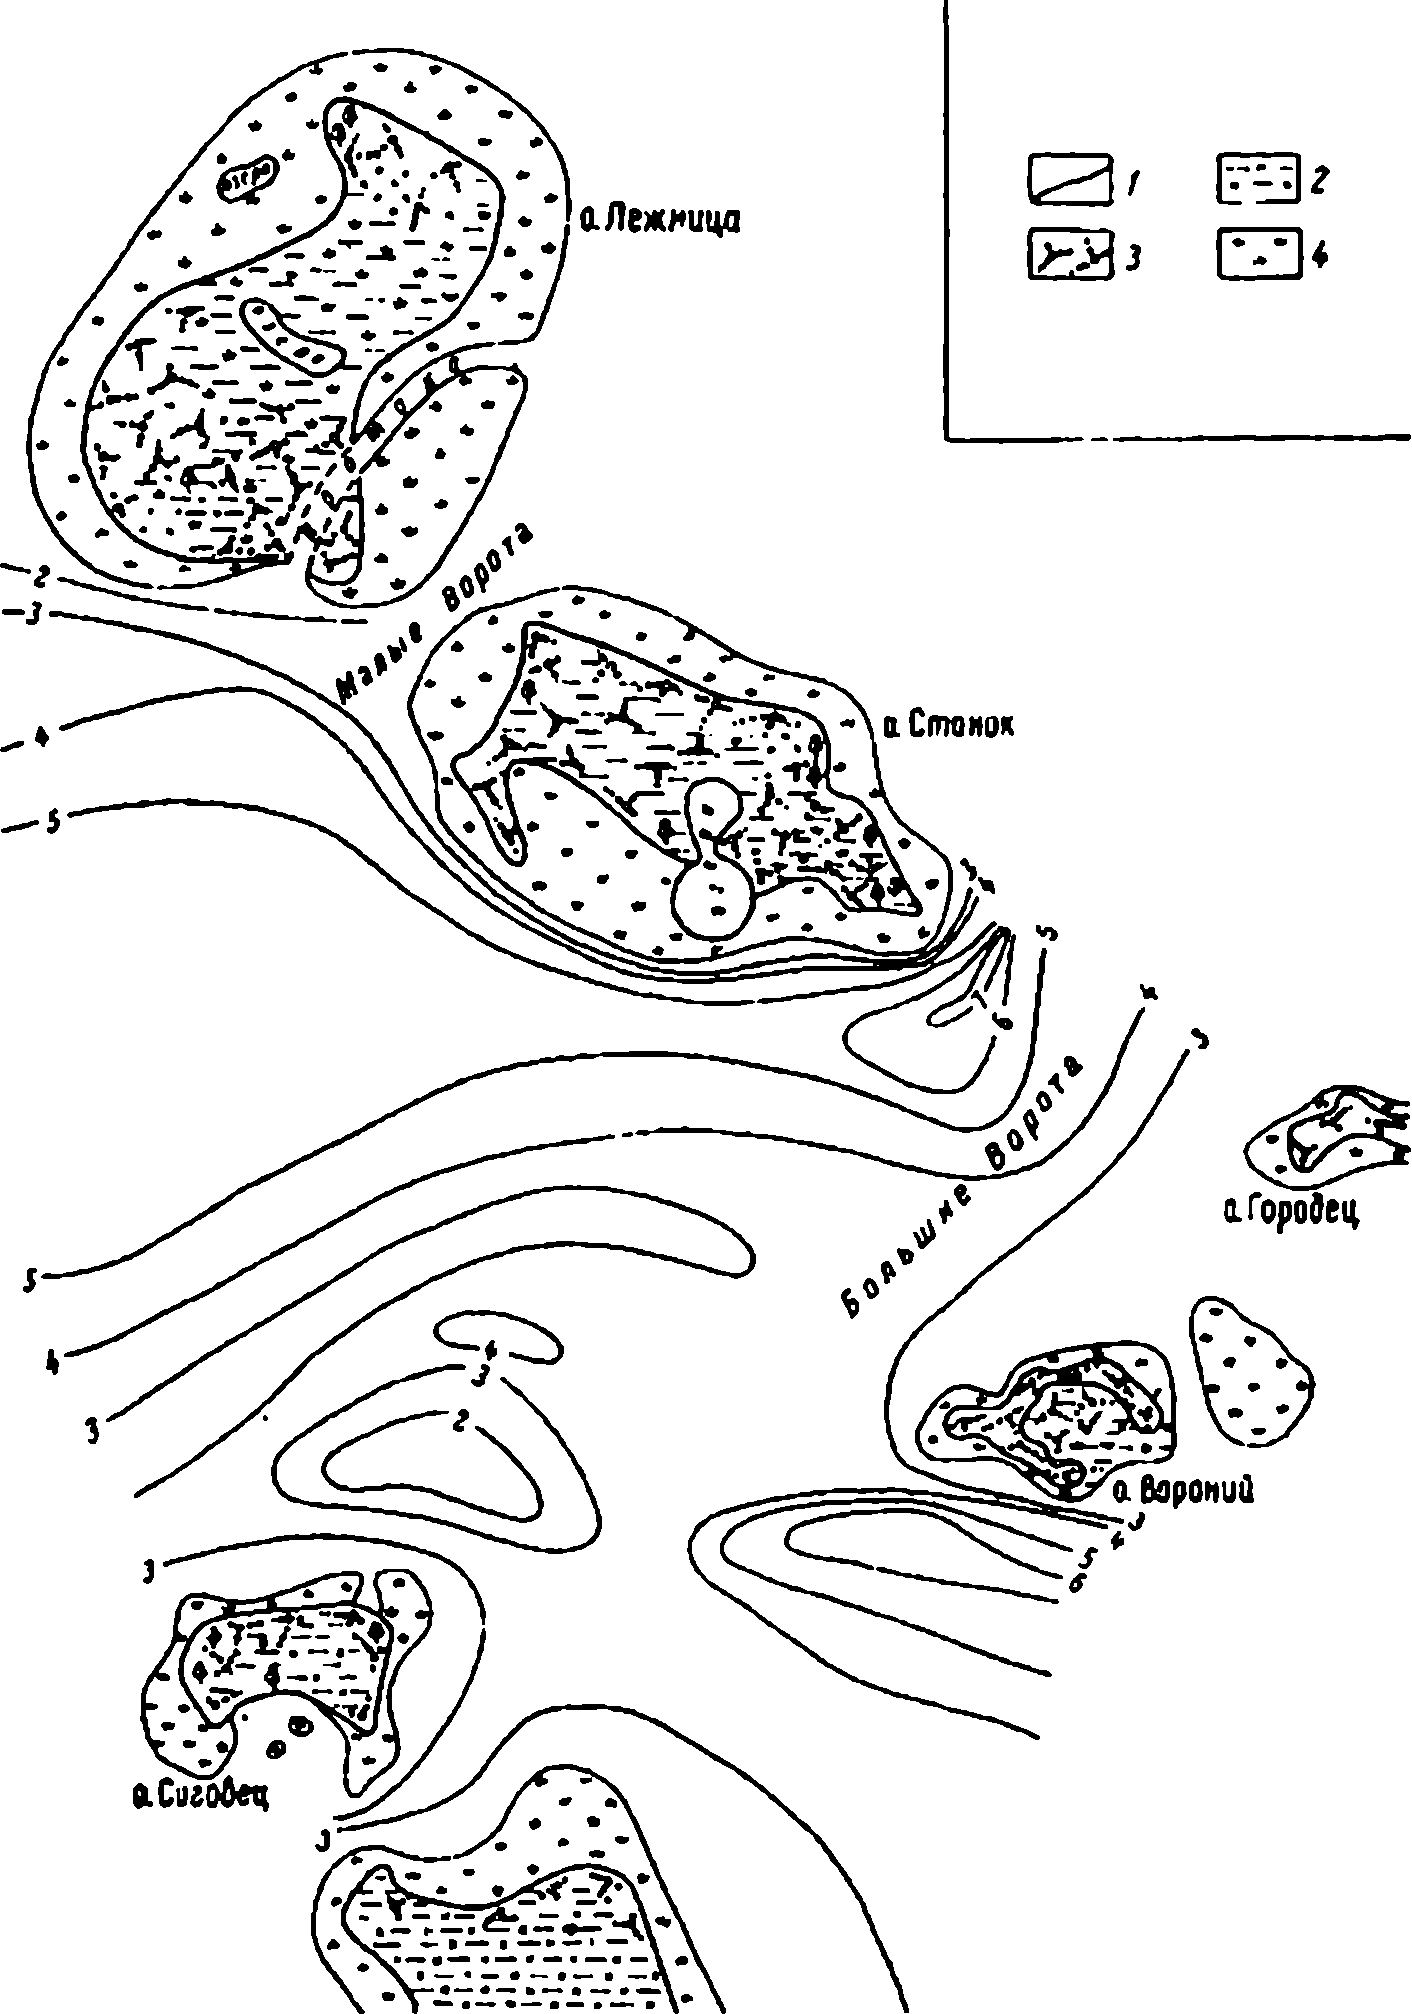 Схема участка Теплого озера в районе Больших Ворот: 1 — границы суши; 2 — болото; 3 — кустарник; 4 — камыш. Цифры изобат указывают глубину в м